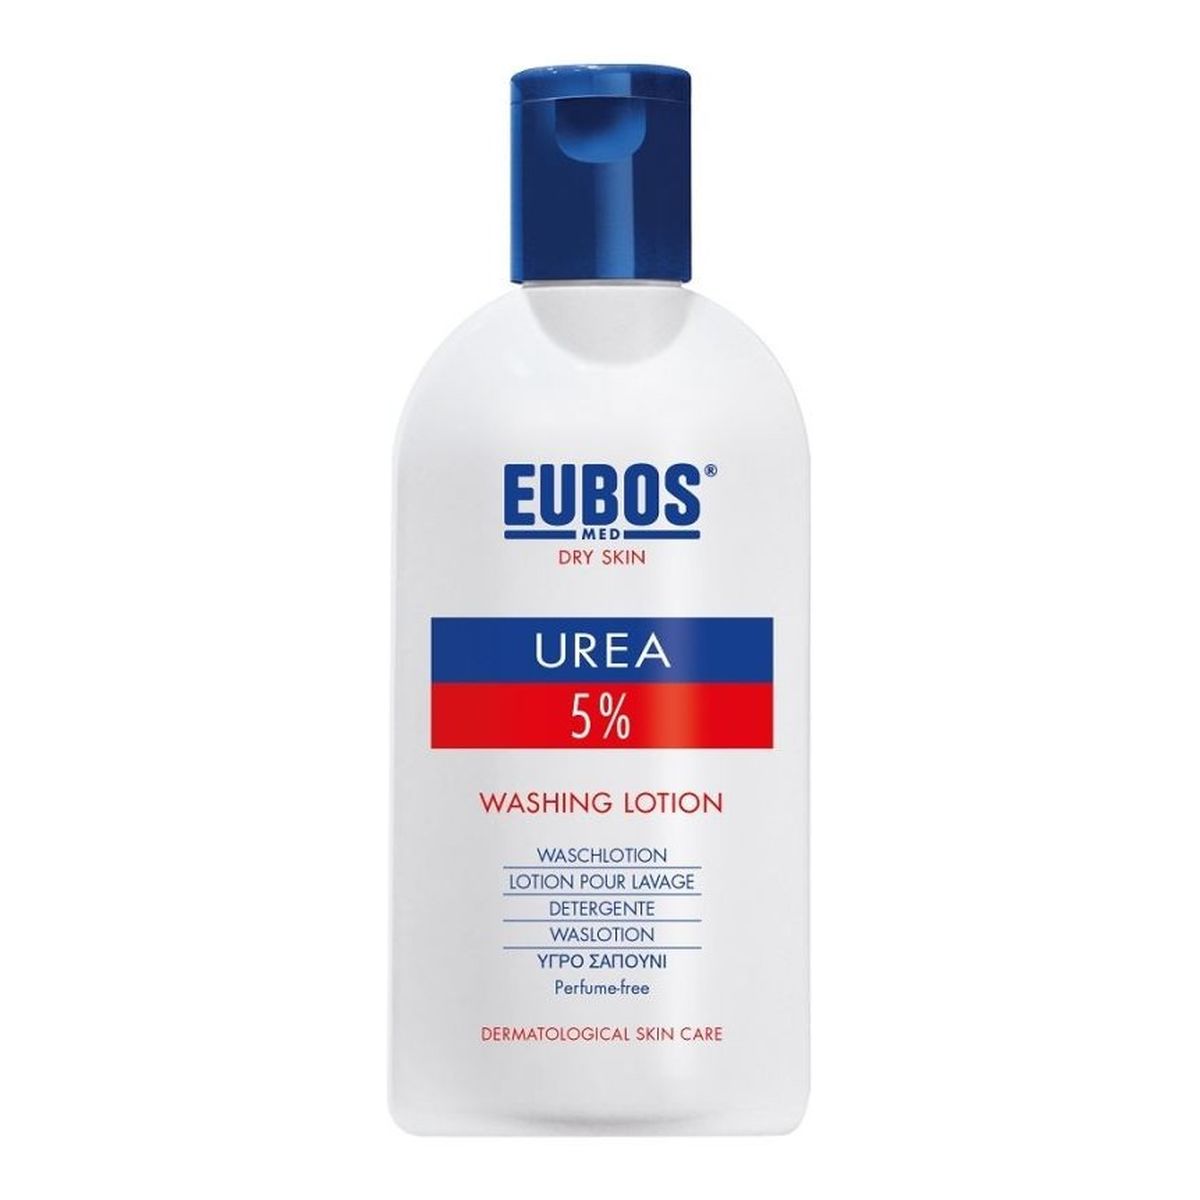 Eubos-Med Urea 5% mydło w płynie 200ml